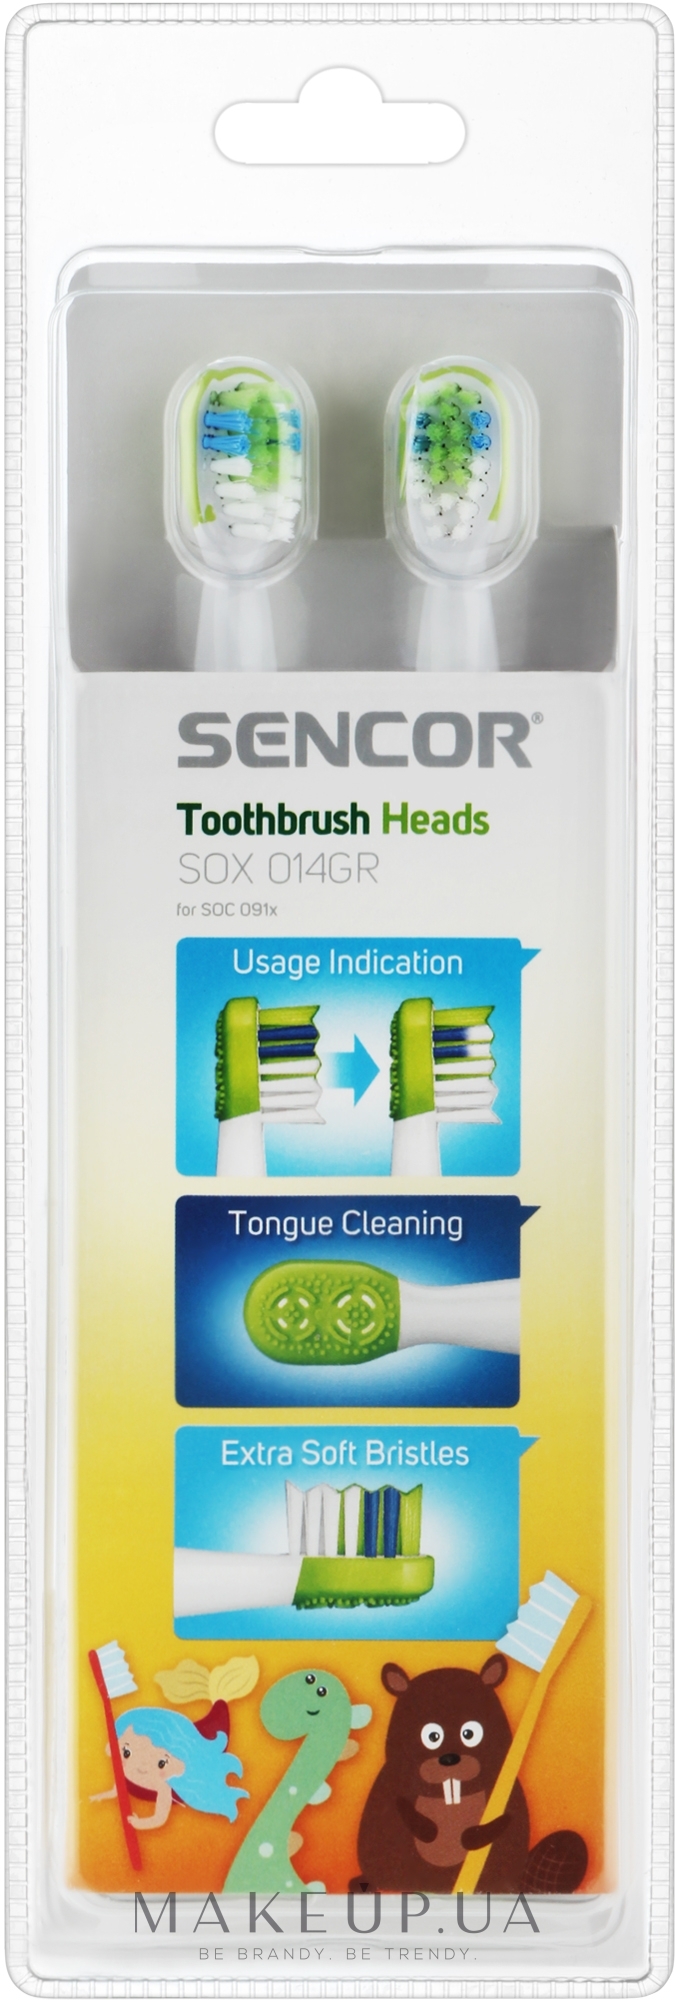 Насадка для электрической зубной щетки, 4 шт. - Sencor Toothbrush Heads SOX 014GR — фото 4шт